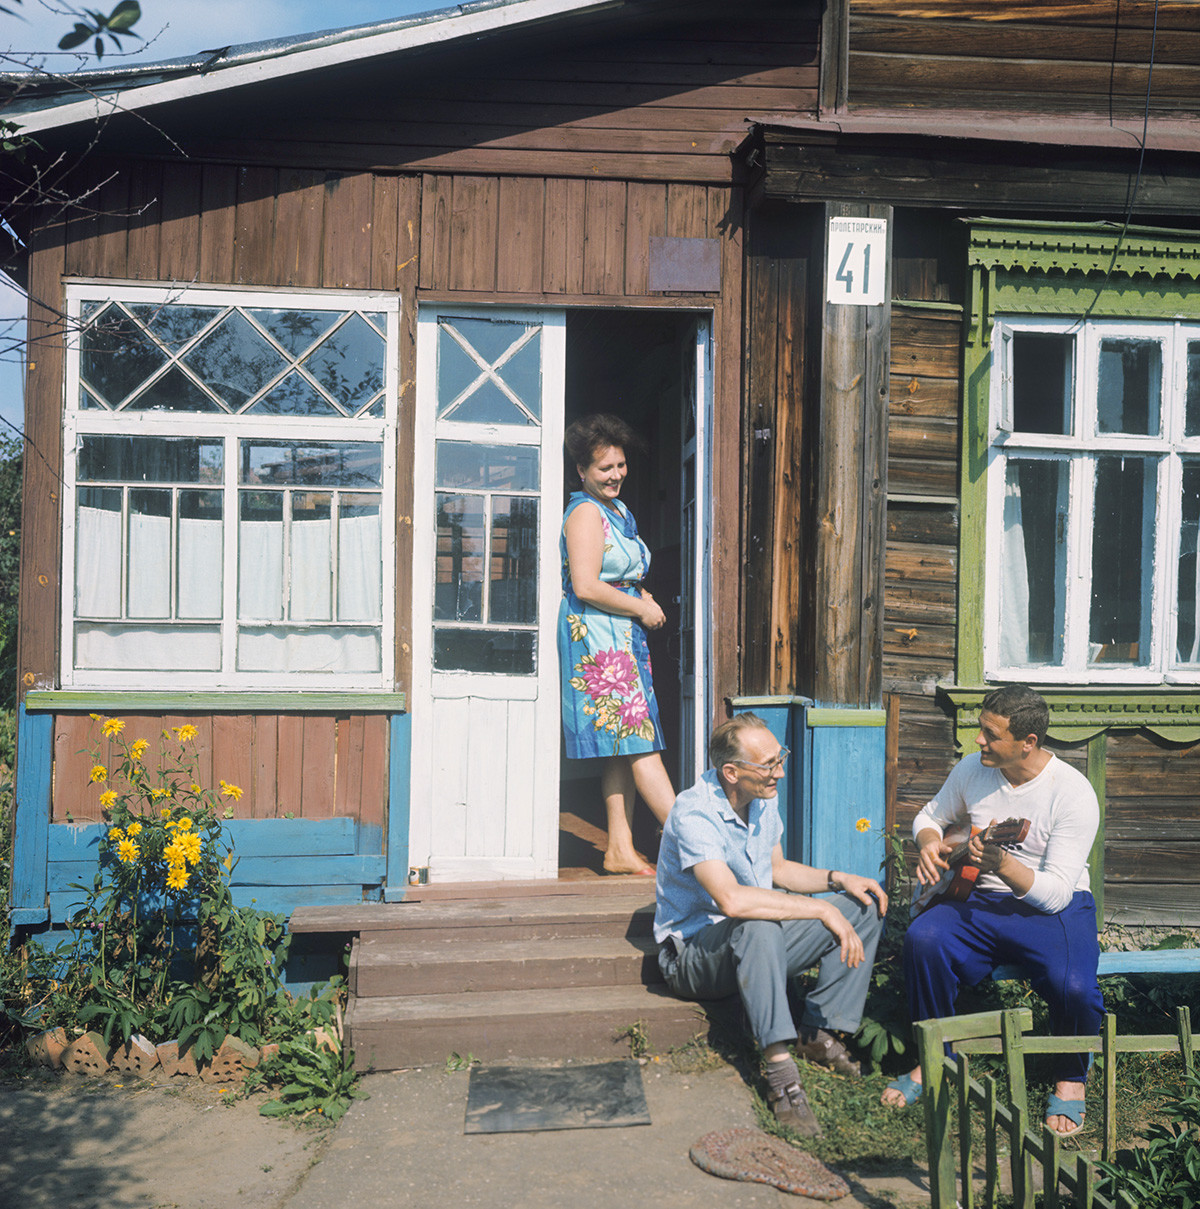 Il pilota-cosmonauta sovietico Vladislav Volkov con sua moglie e suo suocero in dacia
